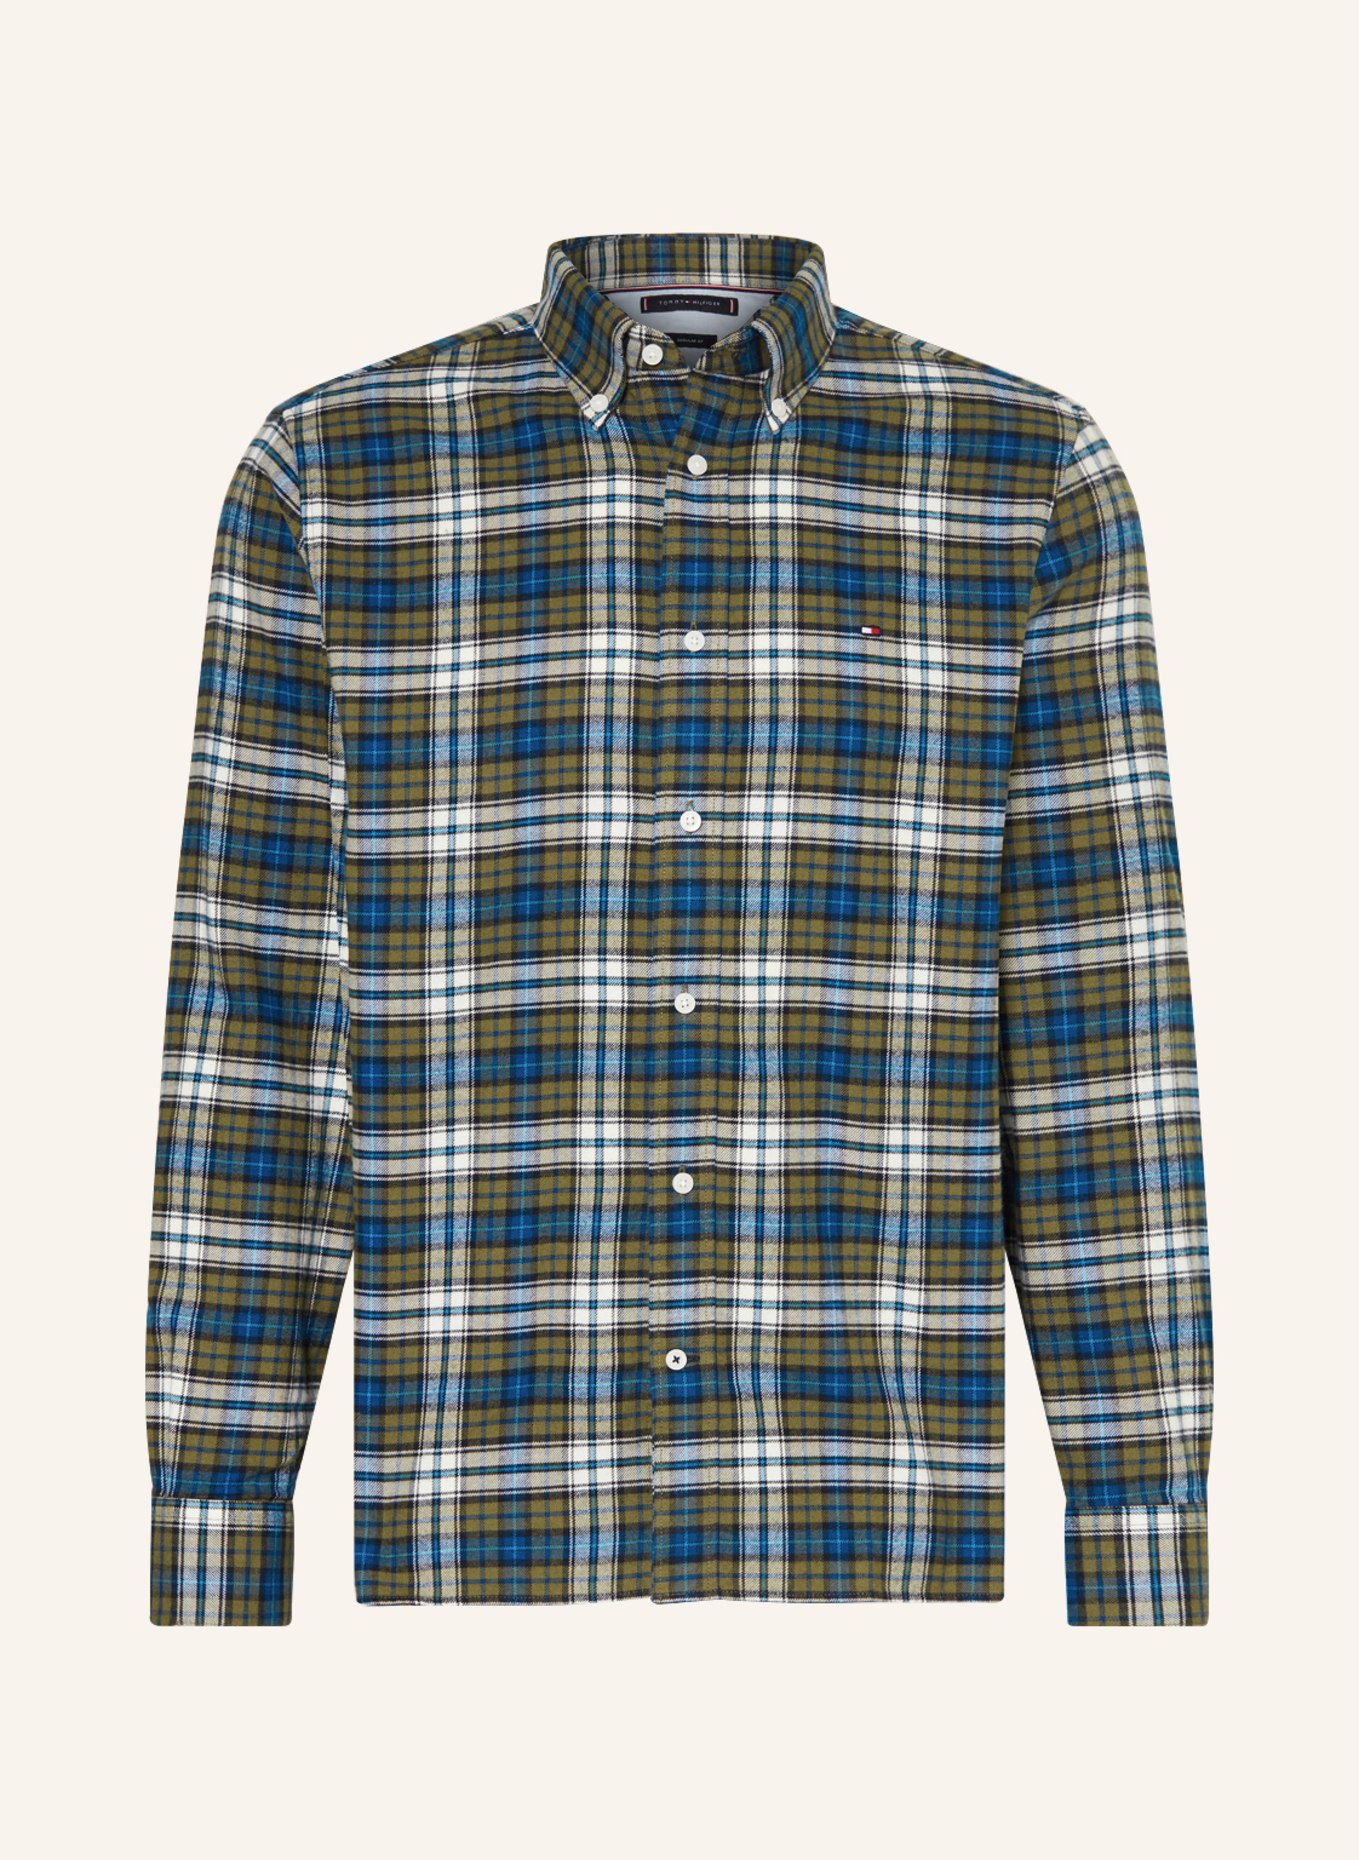 TOMMY HILFIGER Flannel shirt regular fit, Color: OLIVE/ BLUE/ WHITE (Image 1)